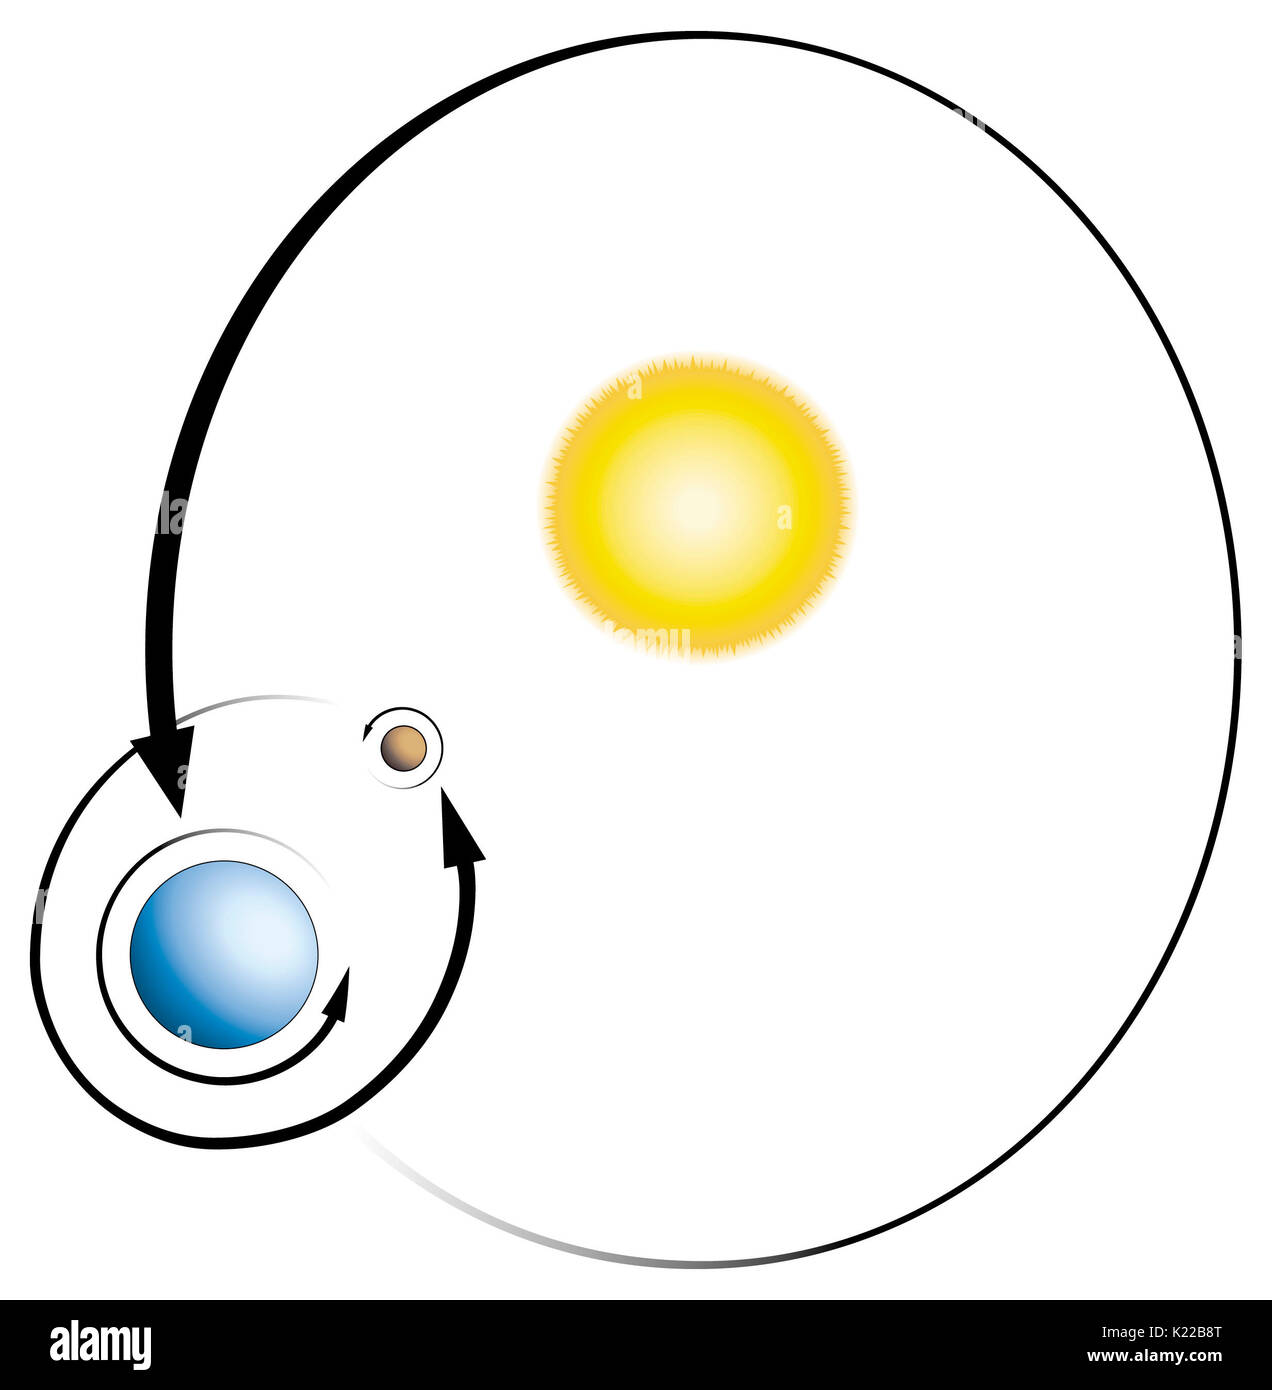 In generale, una stella (come il Sun) è un corpo celeste che emette una grande quantità di energia (luce e calore). Un pianeta è un corpo che orbita intorno ad una stella e riflette una parte di tale energia; un satellite naturale (o luna) gira intorno ad un pianeta. Tutti i nove pianeti in orbita attorno al Sole in senso antiorario. Ad eccezione di Venere e Urano, ma sono anche in grado di ruotare in senso antiorario sul loro asse. Foto Stock